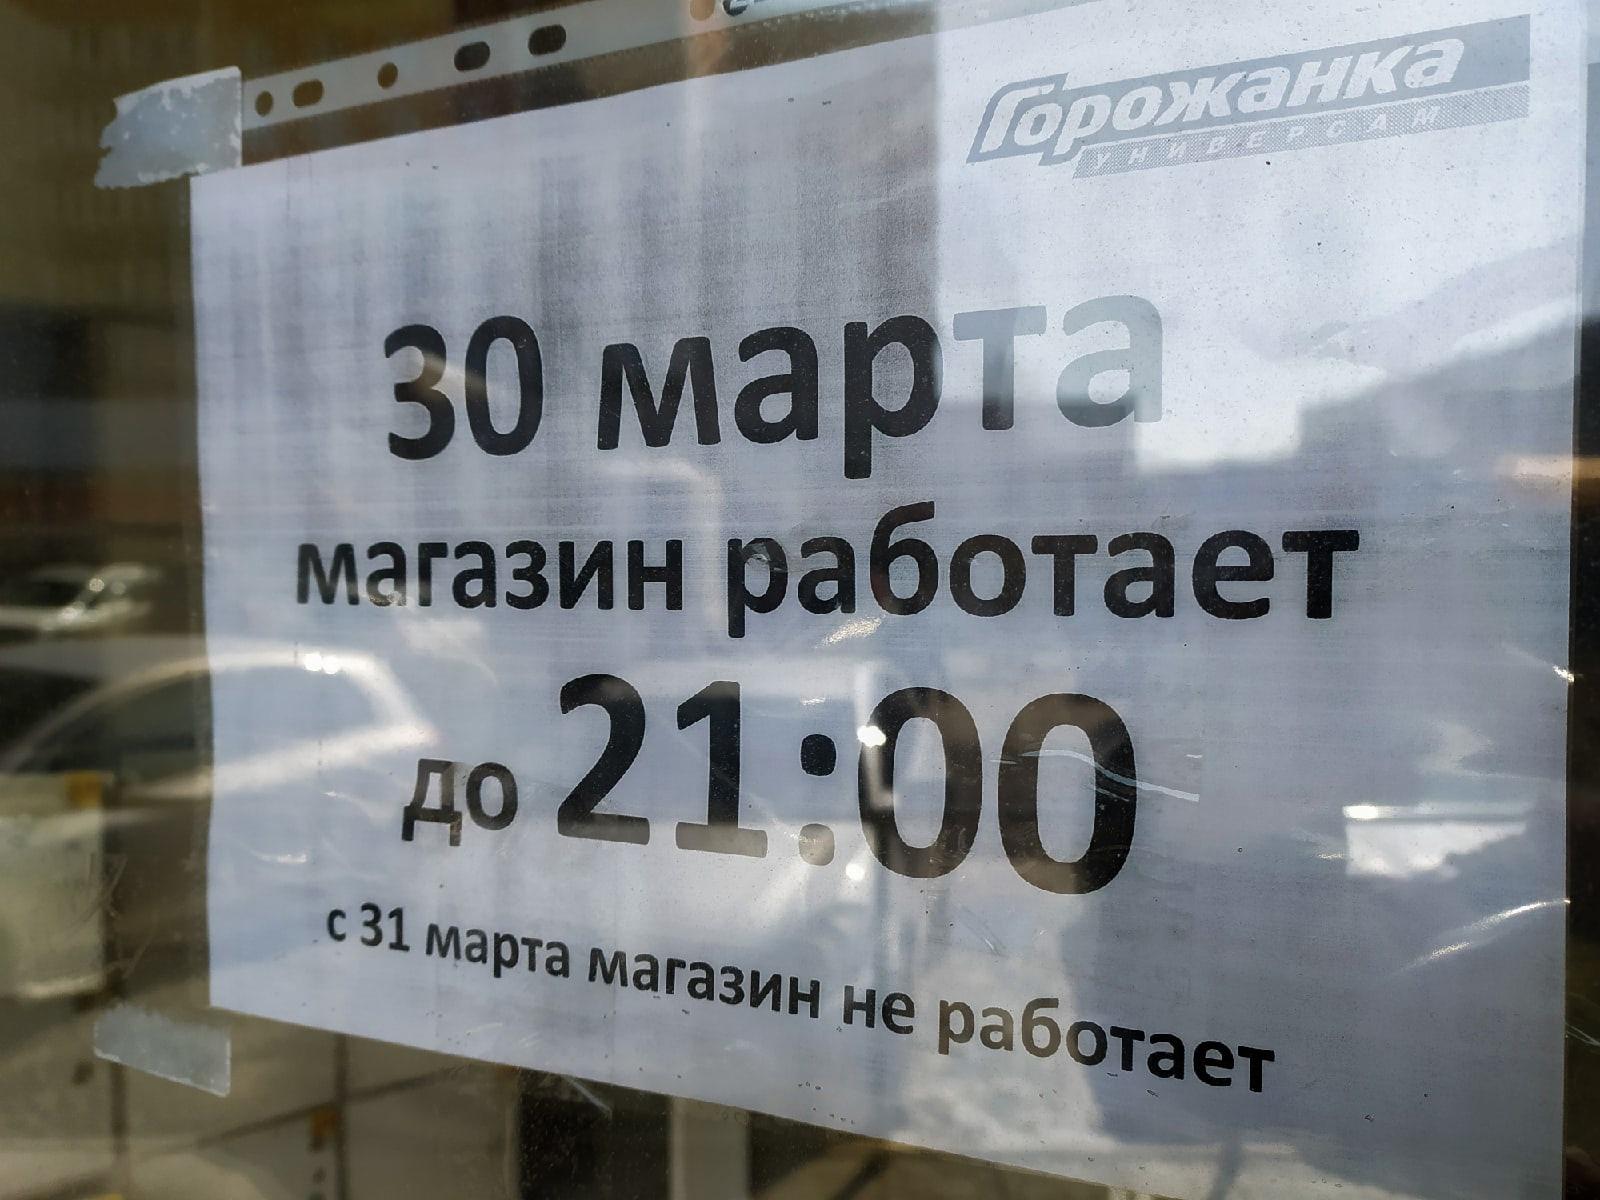 Фото Сеть магазинов «Горожанка» закрылась в Новосибирске 1 апреля 3